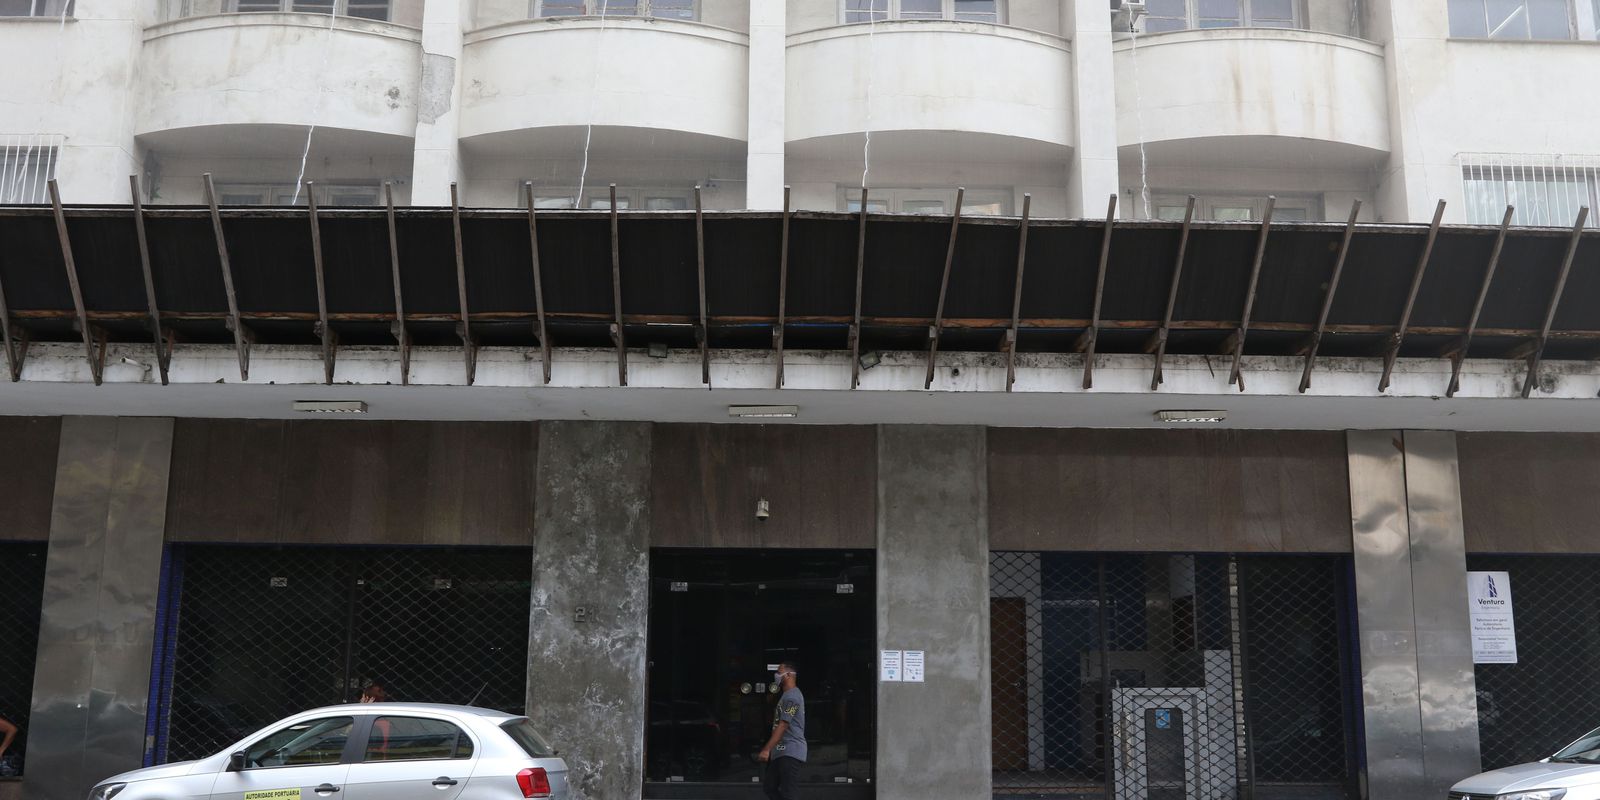 Docas do Rio puts its headquarter building for sale near Praça Mauá